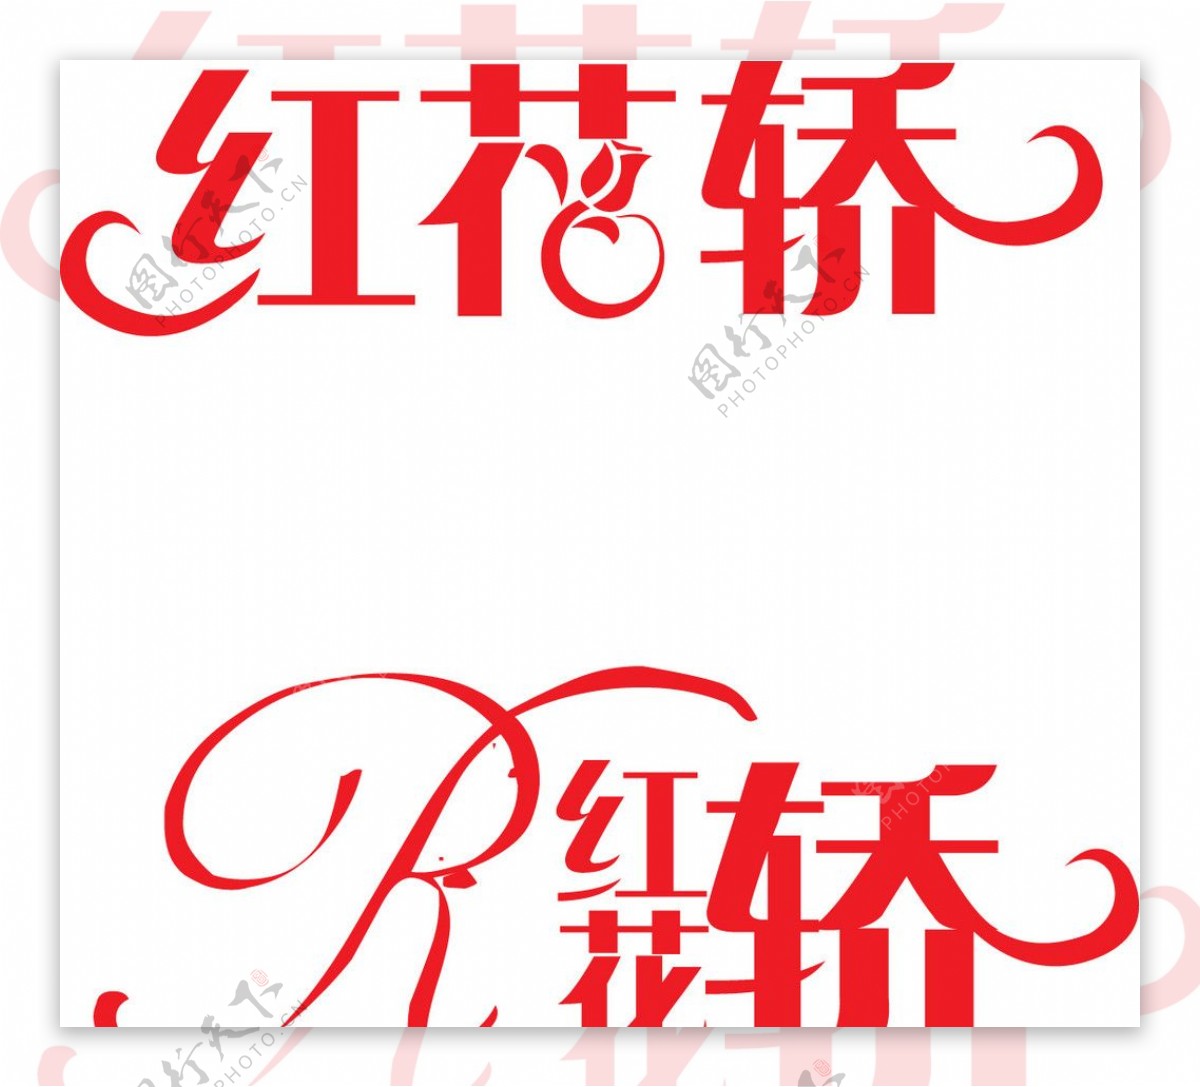 红花轿标志设计